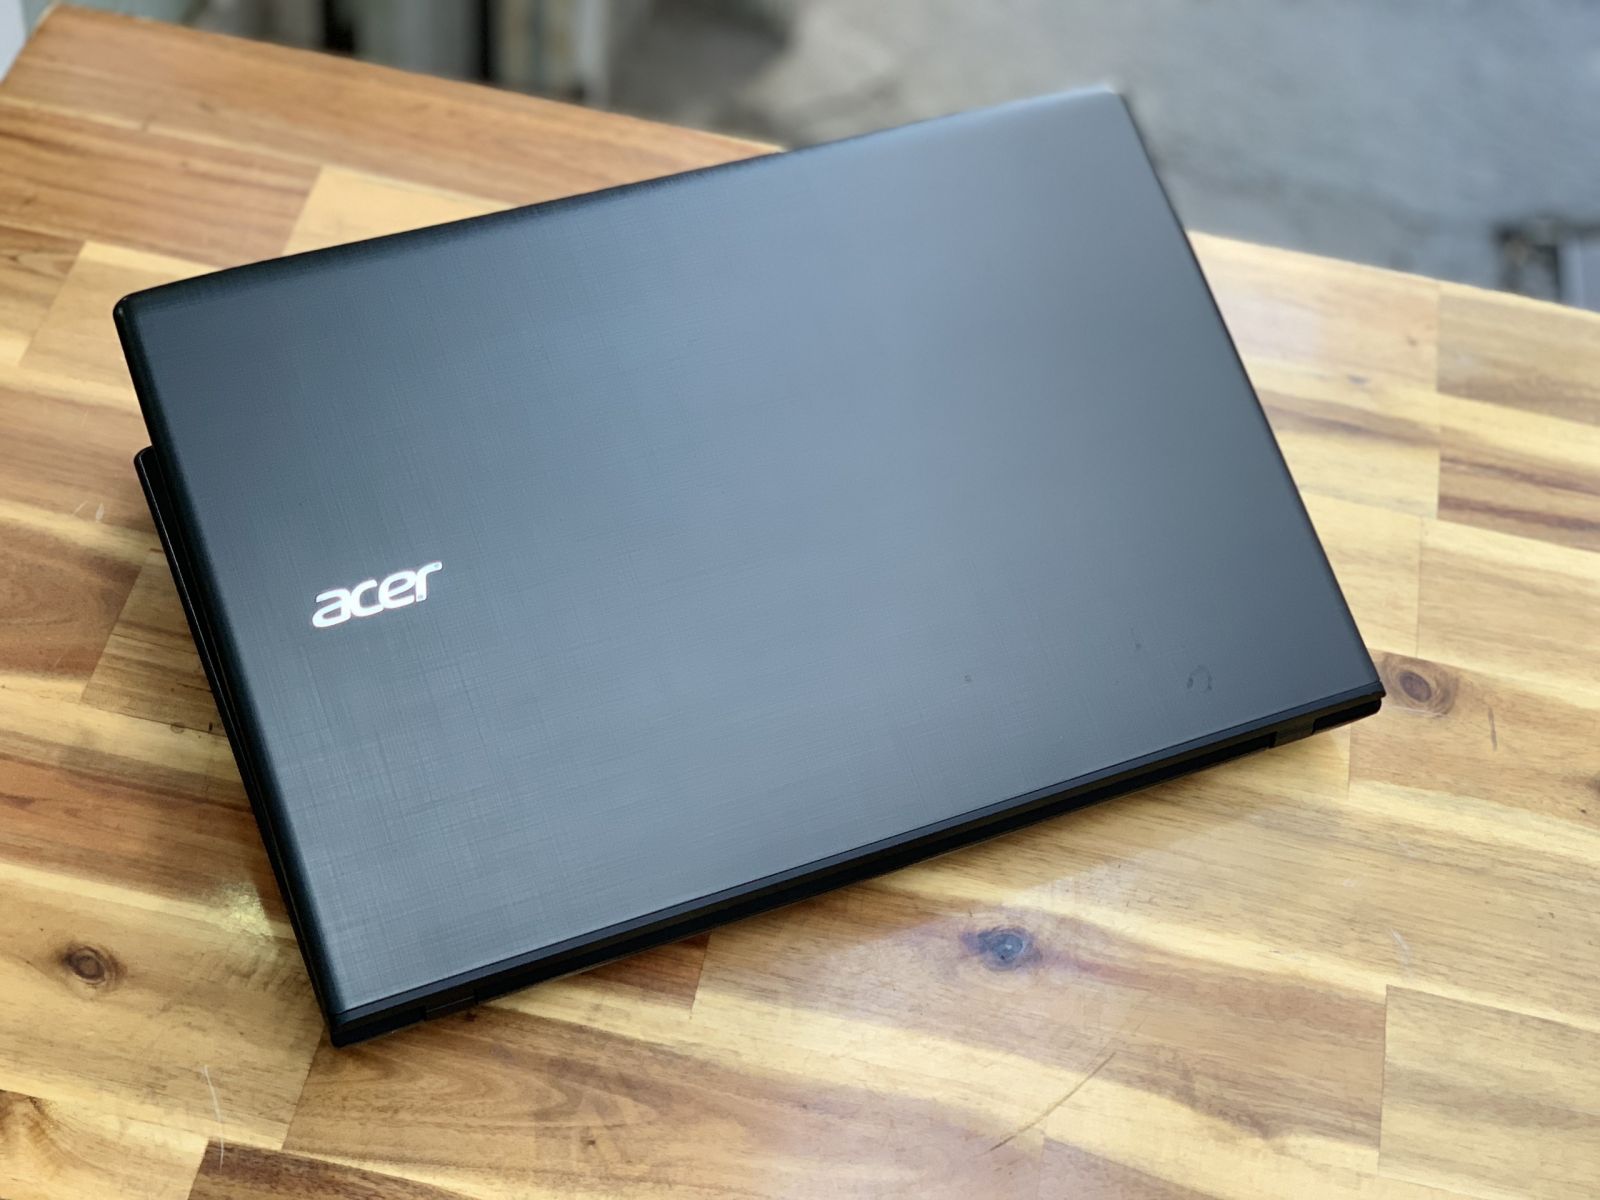 Laptop Acer E5-575G/ i5 7200U/ 8G/ SSD128 - 500G/ Vga rời GT940MX/ Chuyên Game Đồ họa/ Giá rẻ2